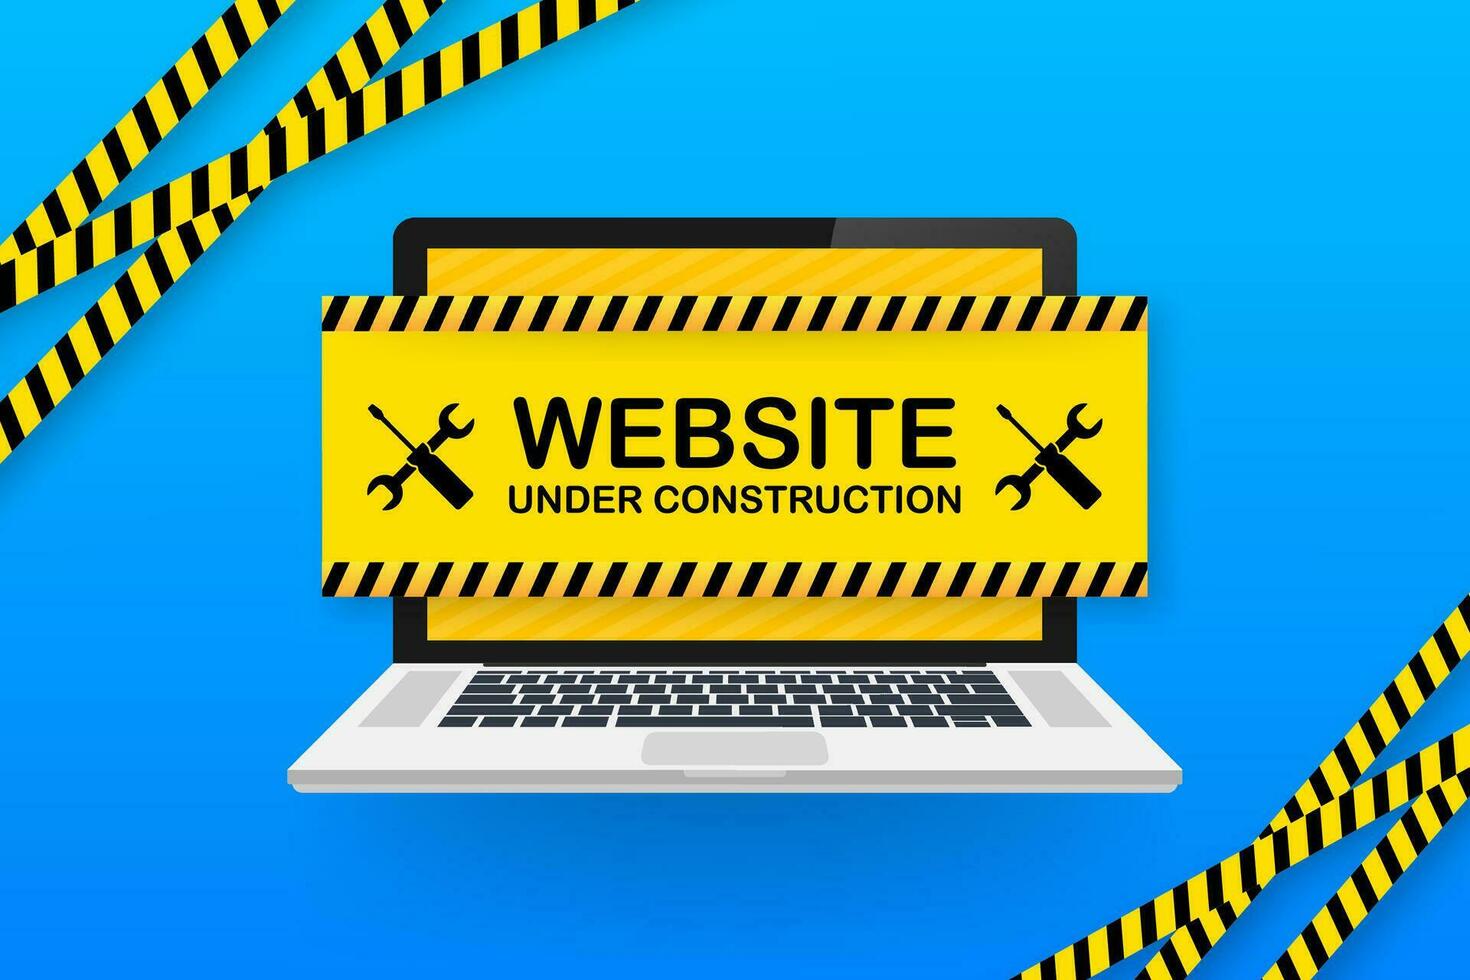 Website Under construction sign on laptop. Vector illustration for website